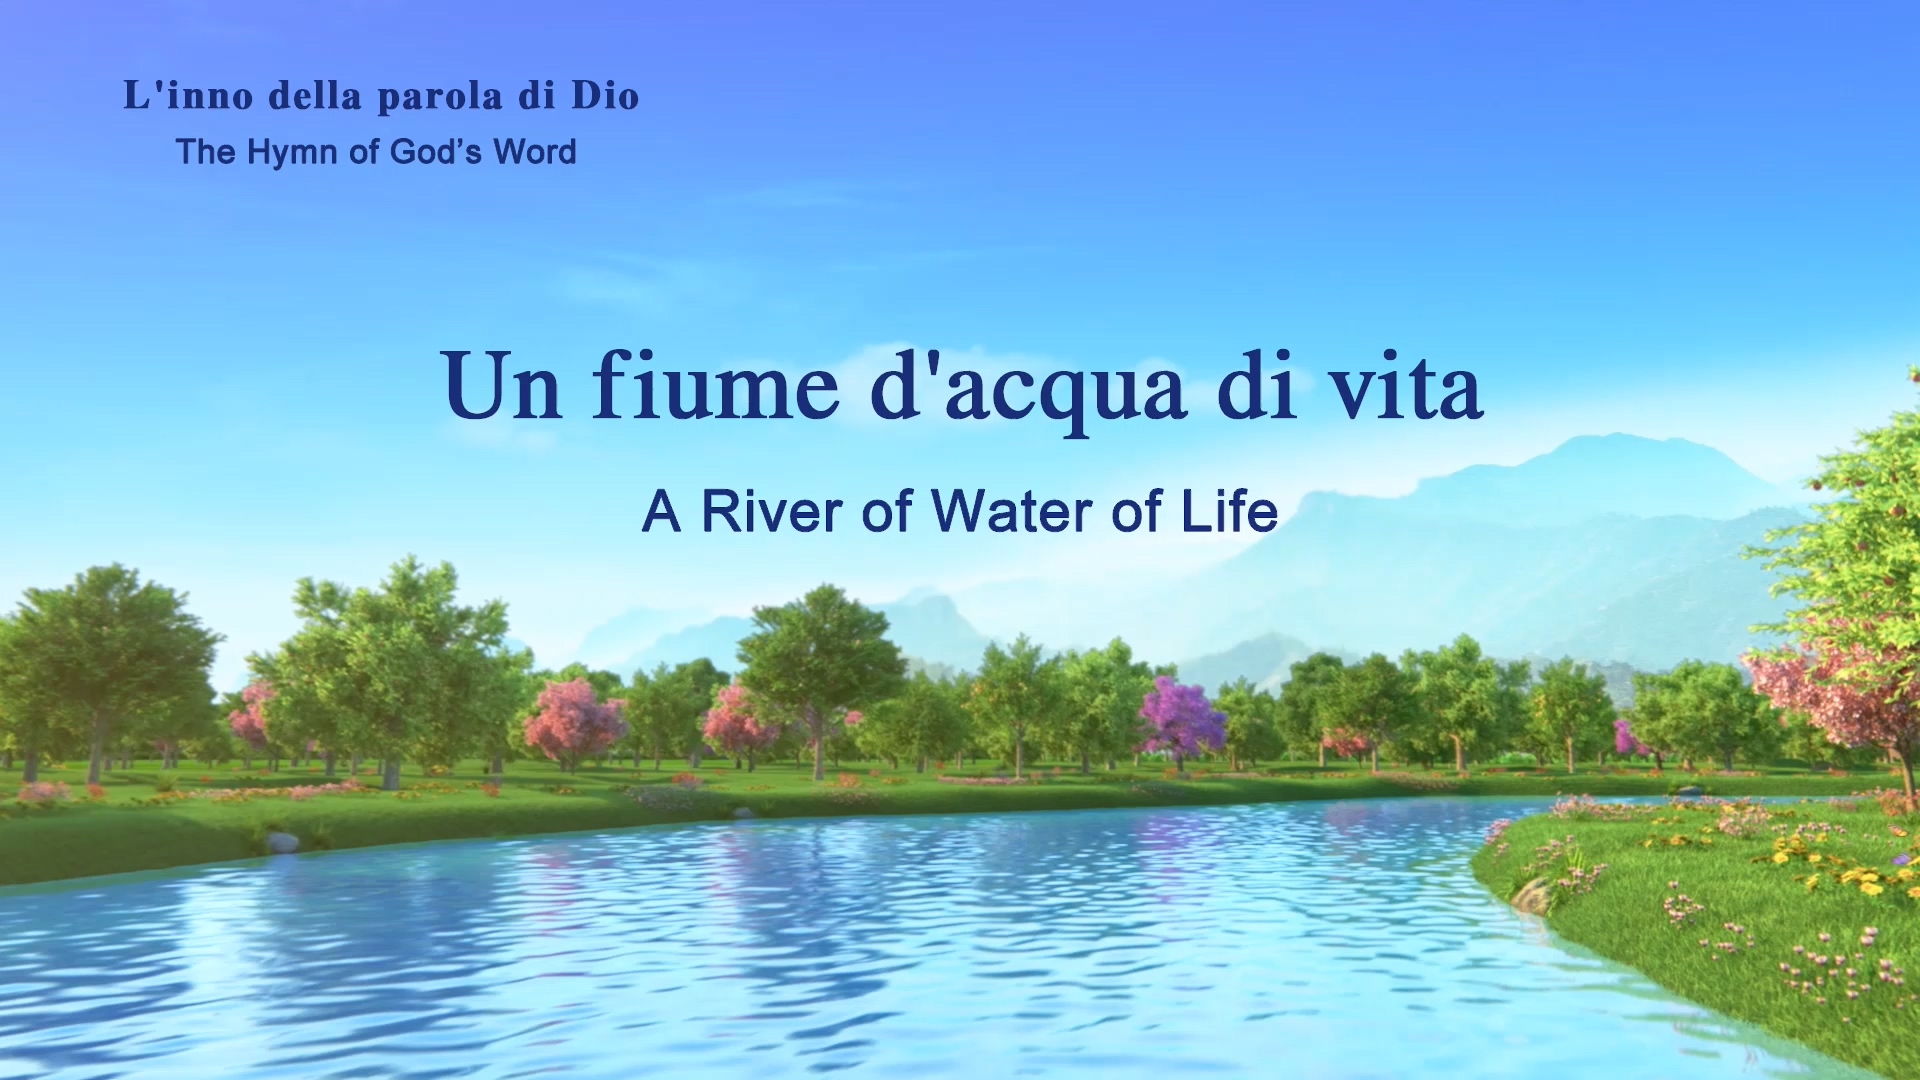 Un fiume d'acqua di vita | Lodare Dio Onnipotente